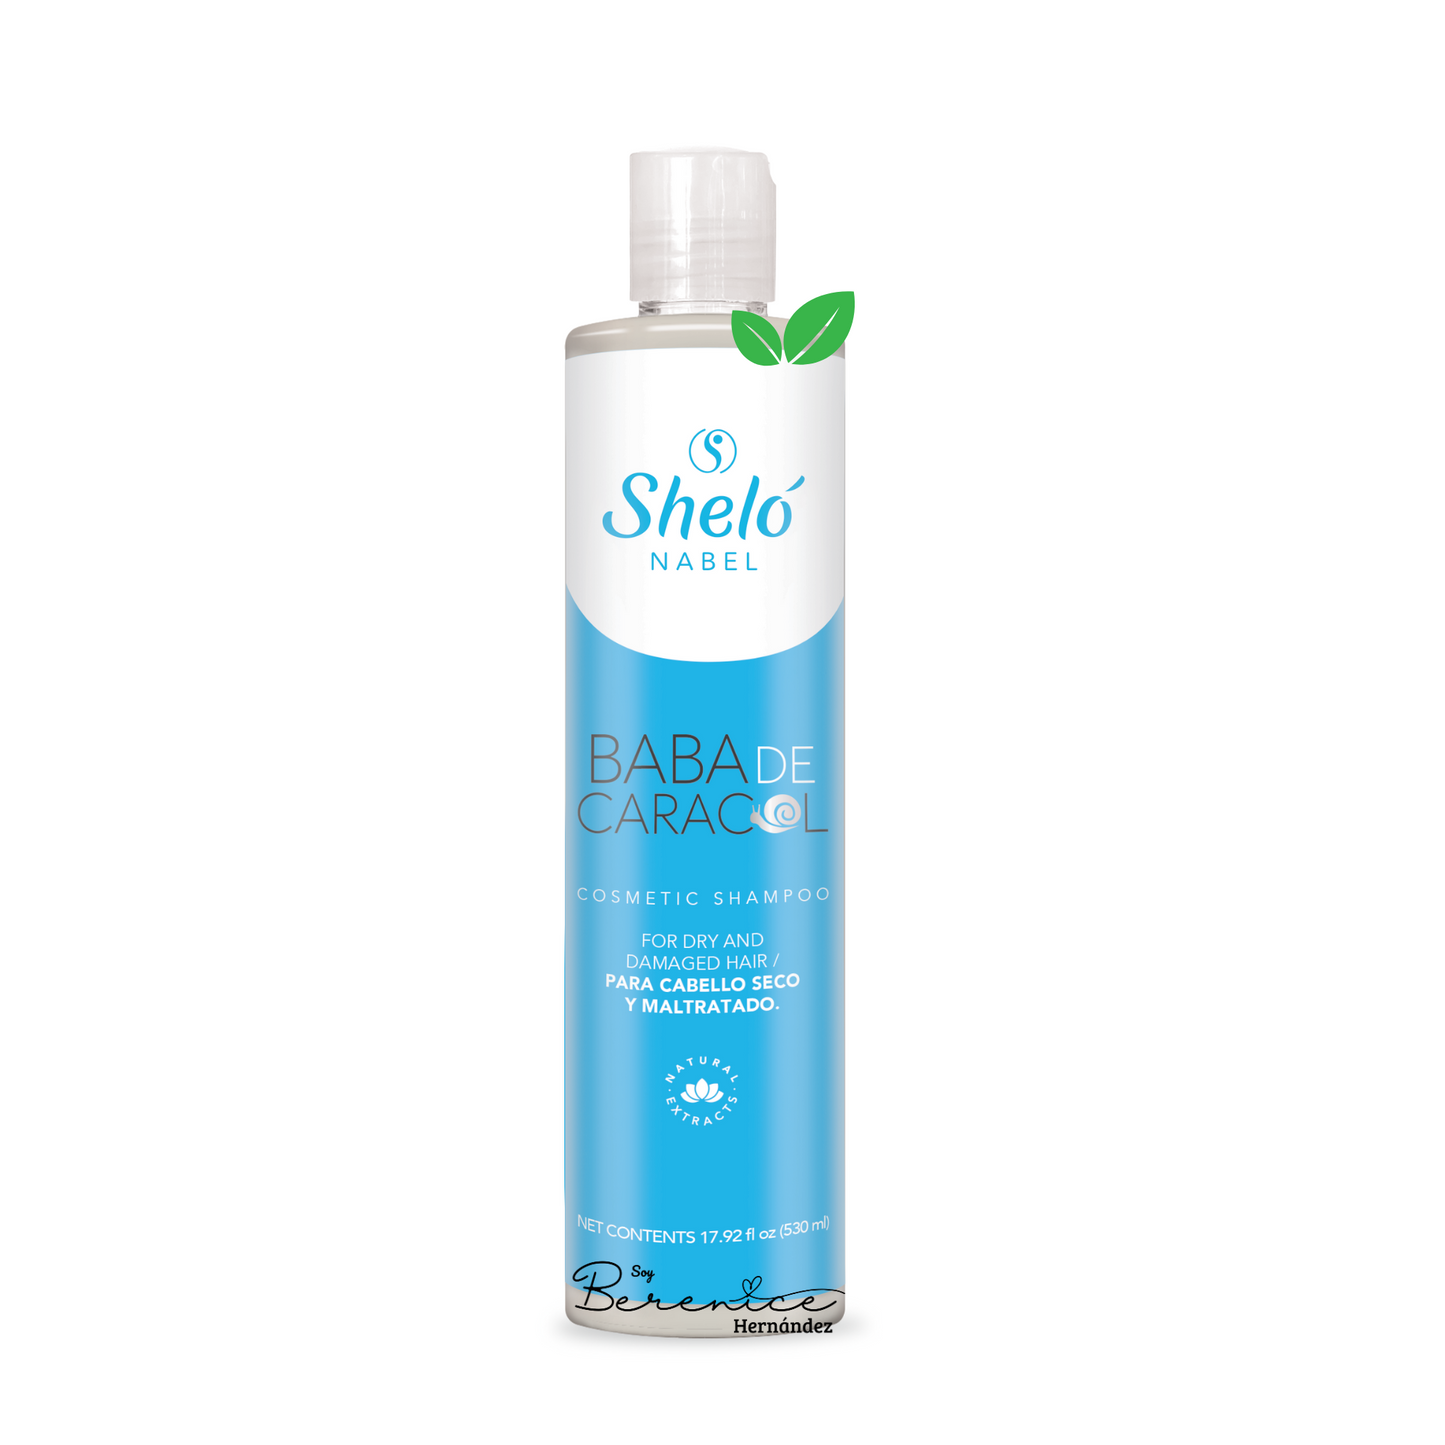 Shampoo Baba de Caracol Shelo NABEL USA